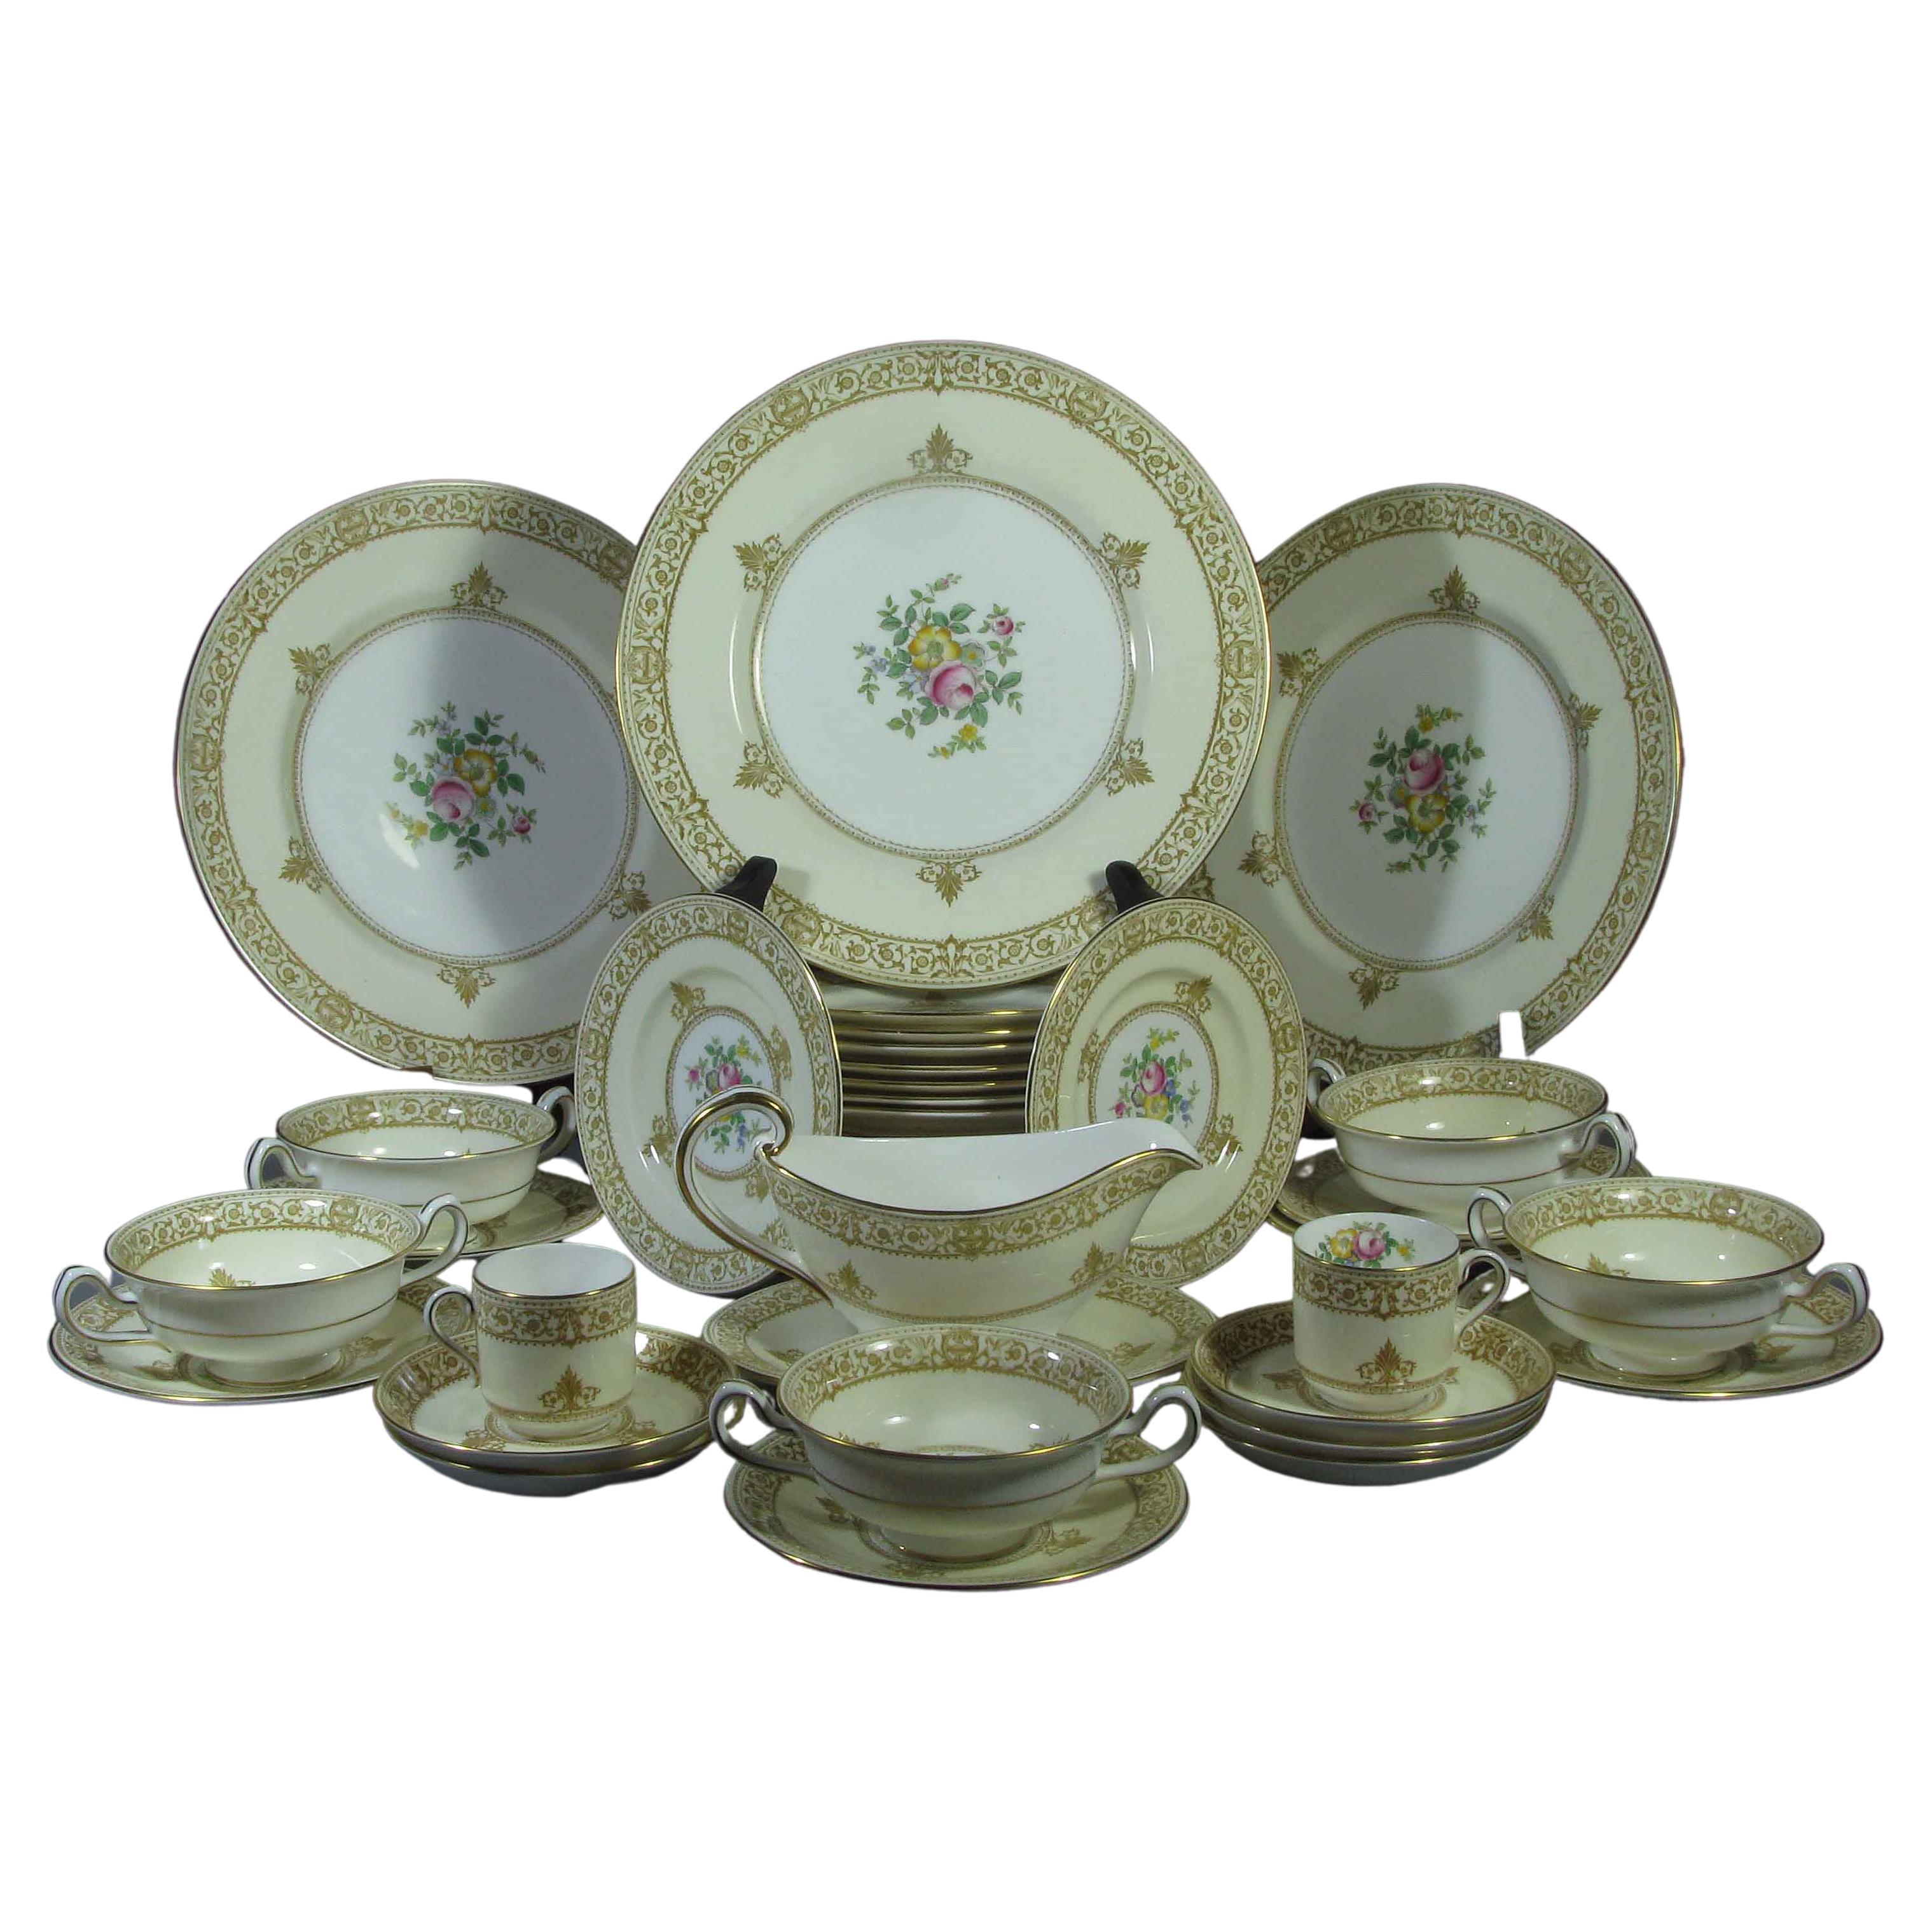 Lotto di tre piatti moderni in ceramica, un vaso e una lampada